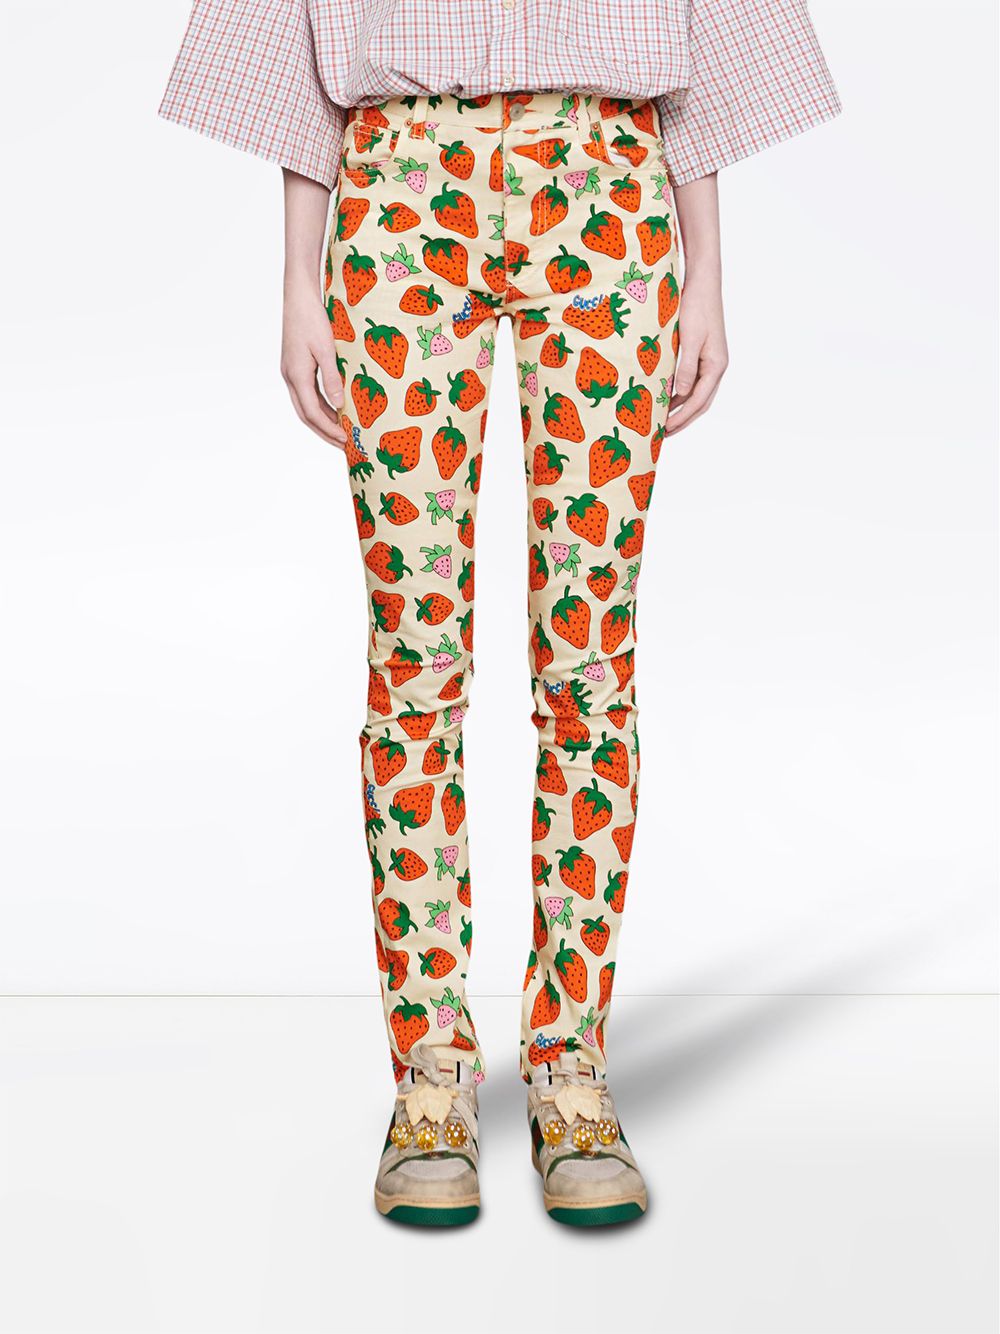 фото Gucci брюки скинни с принтом gucci strawberry